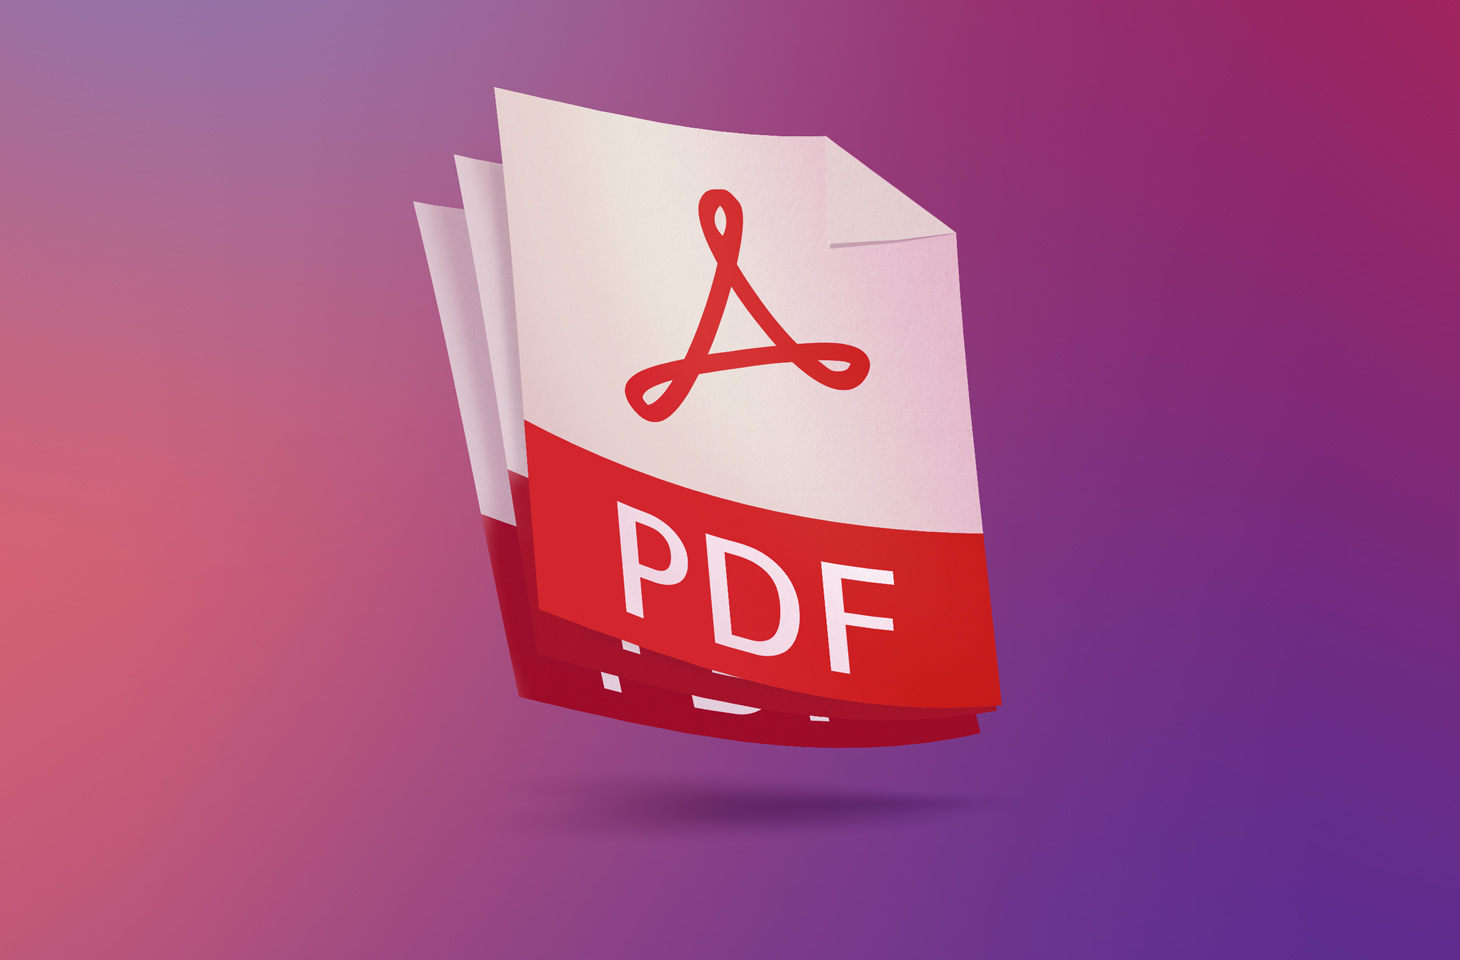 Como juntar vários arquivos PDF em um só